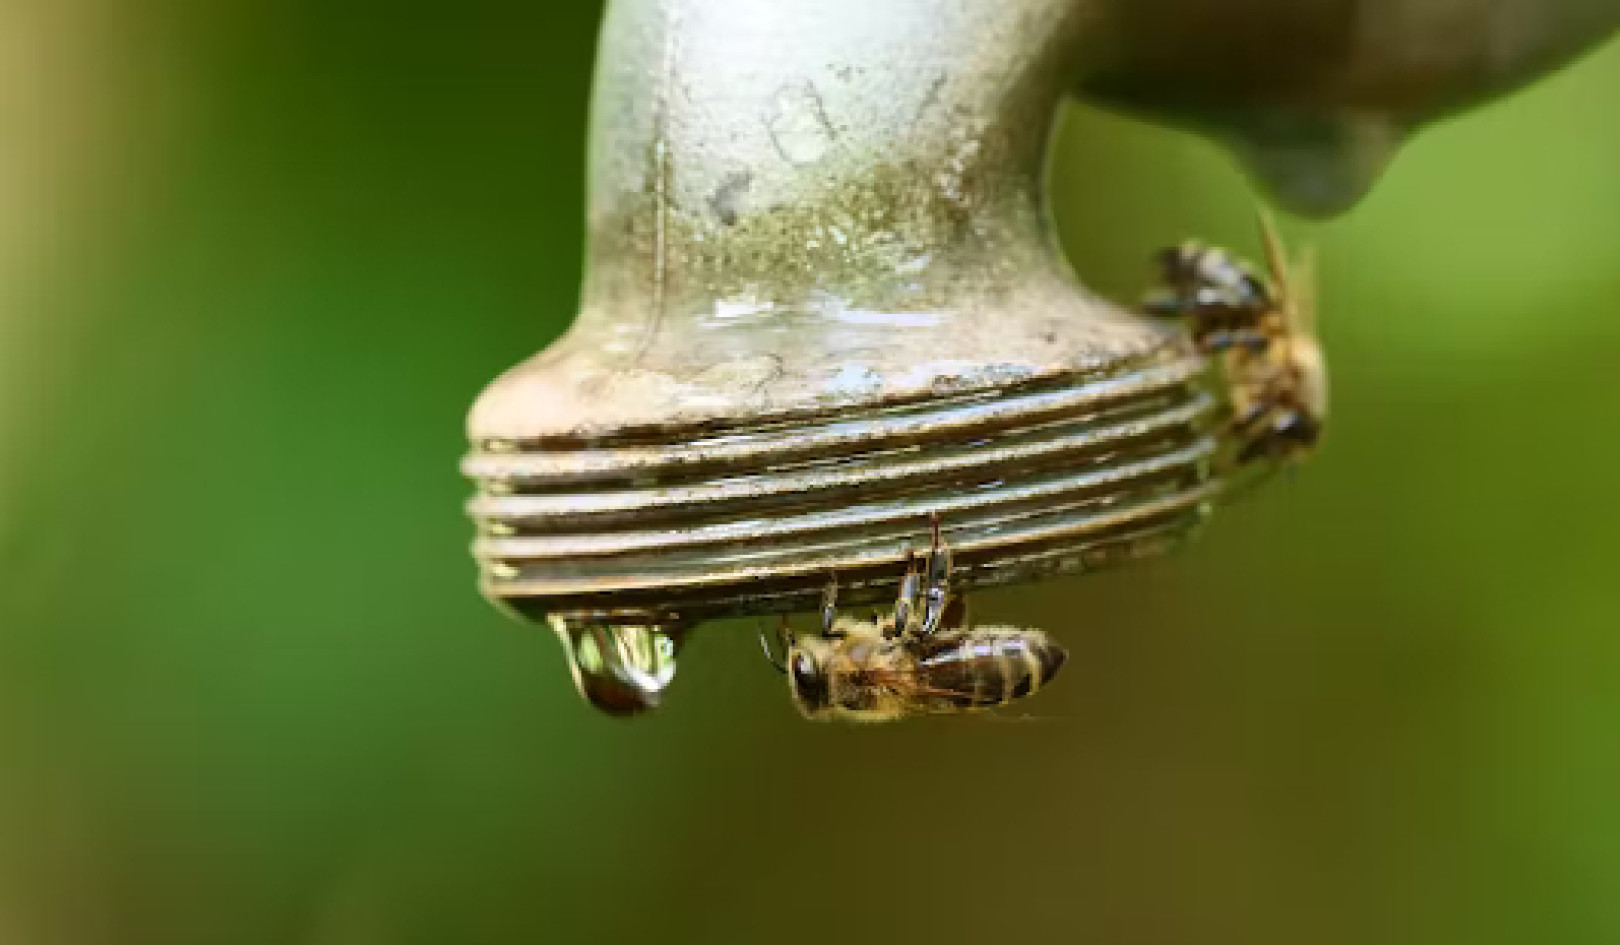 Les abeilles font face à de nombreux défis et le changement climatique augmente la pression